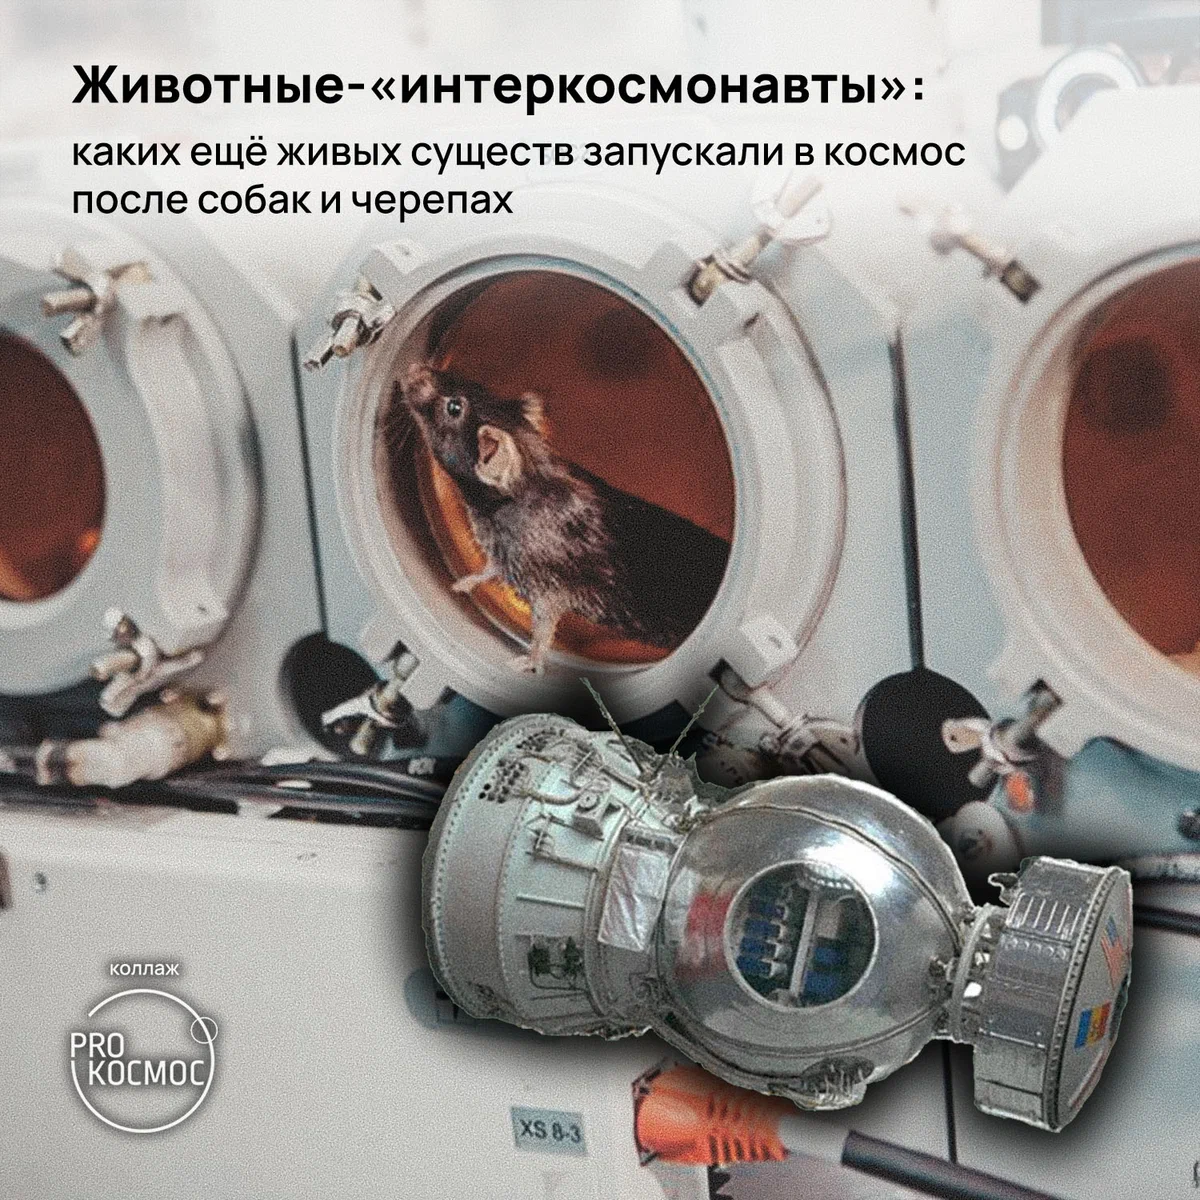 Животные-«интеркосмонавты»: каких ещё живых существ запускали в космос после собак и черепах⁠⁠ height=1200px width=1200px